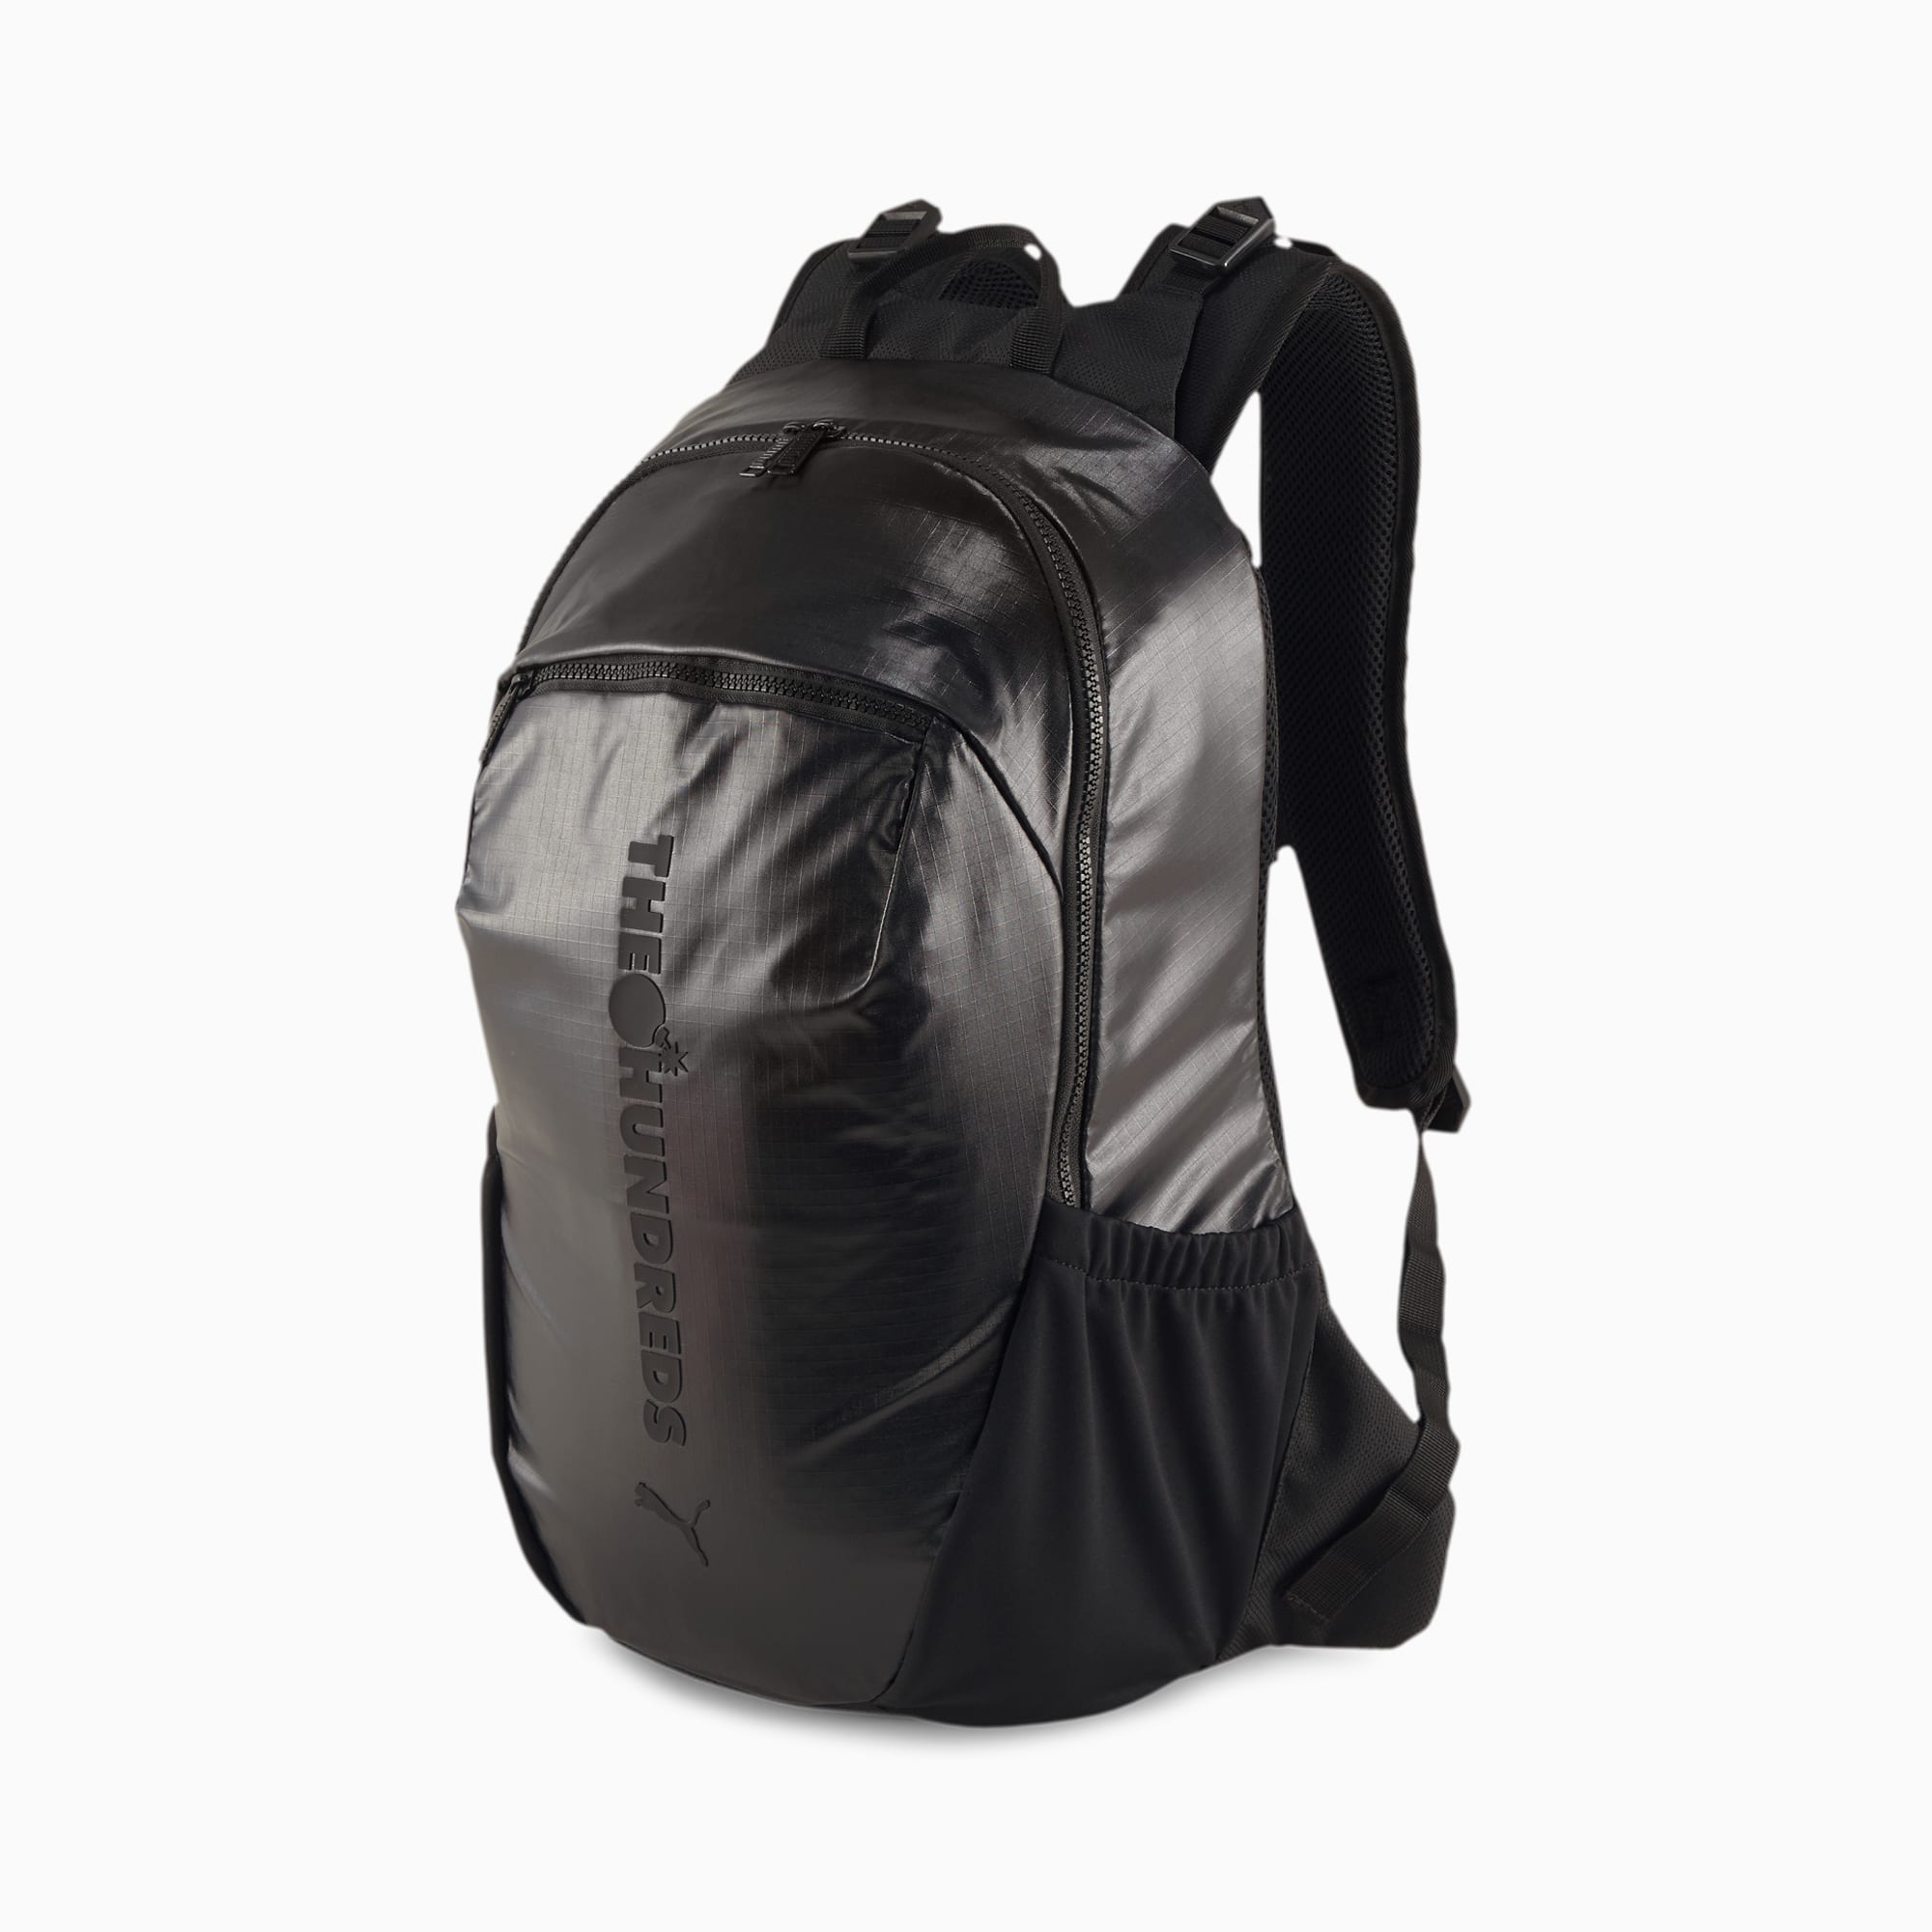 puma backpack grey